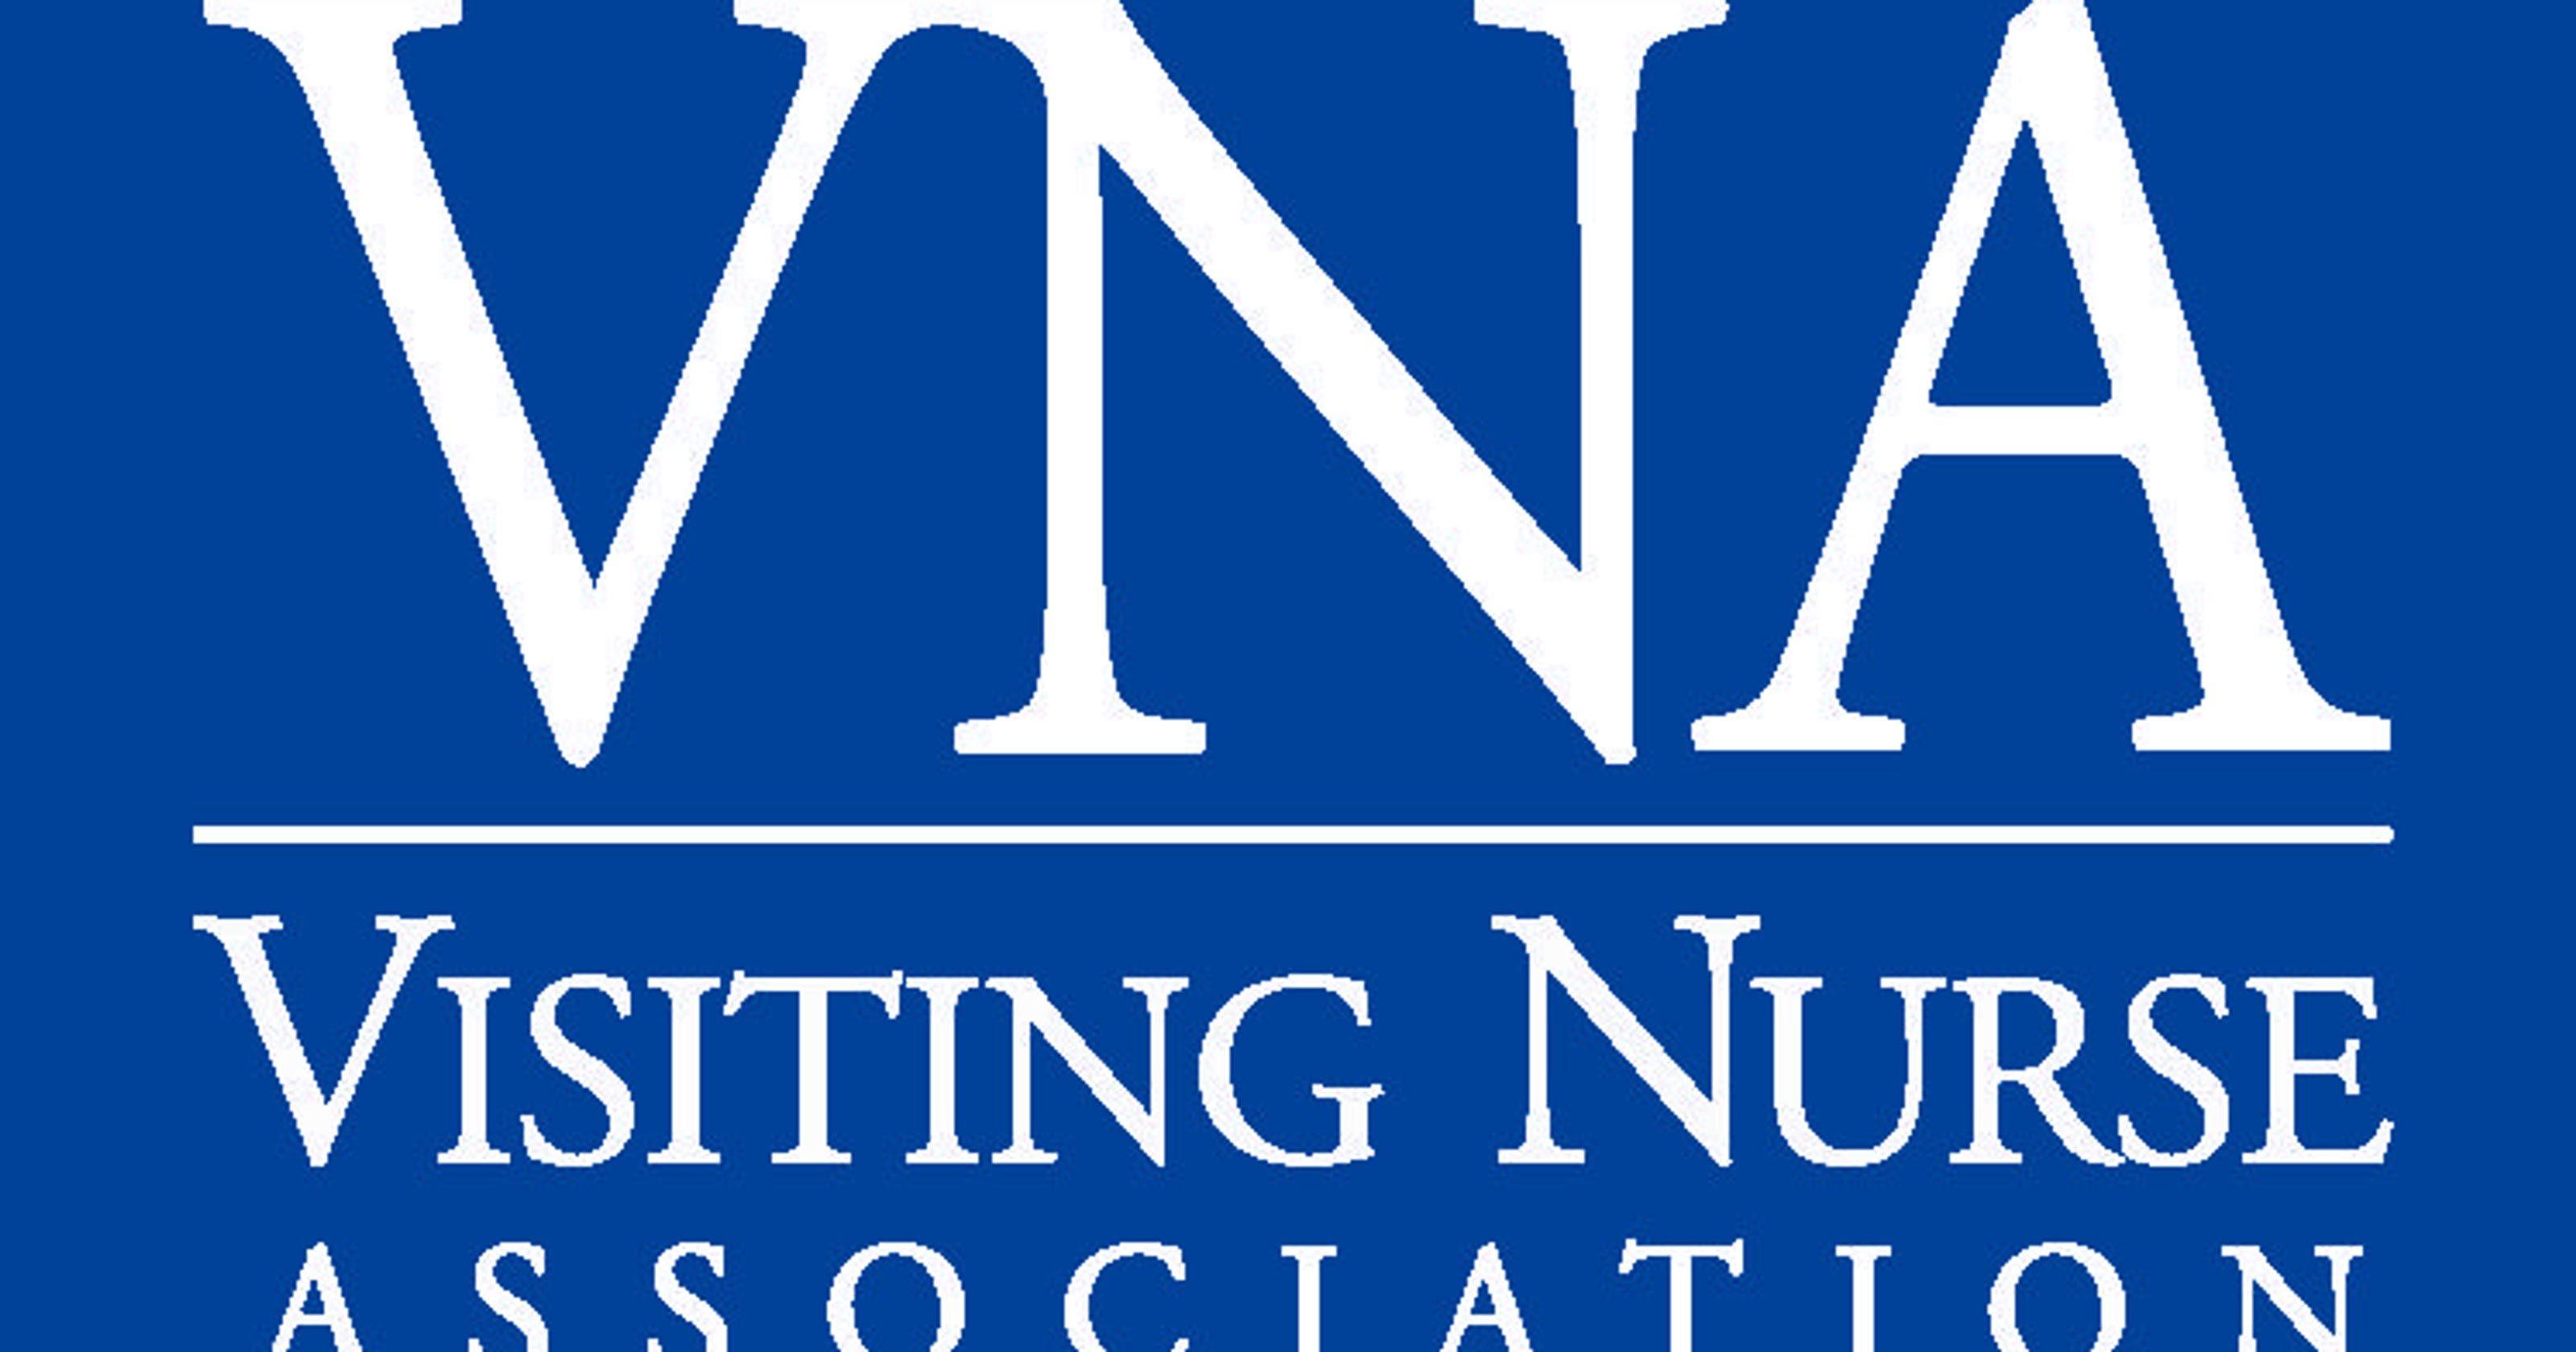 VNA Logo - VNA named a Top Agency of 2016 HomeCare Elite